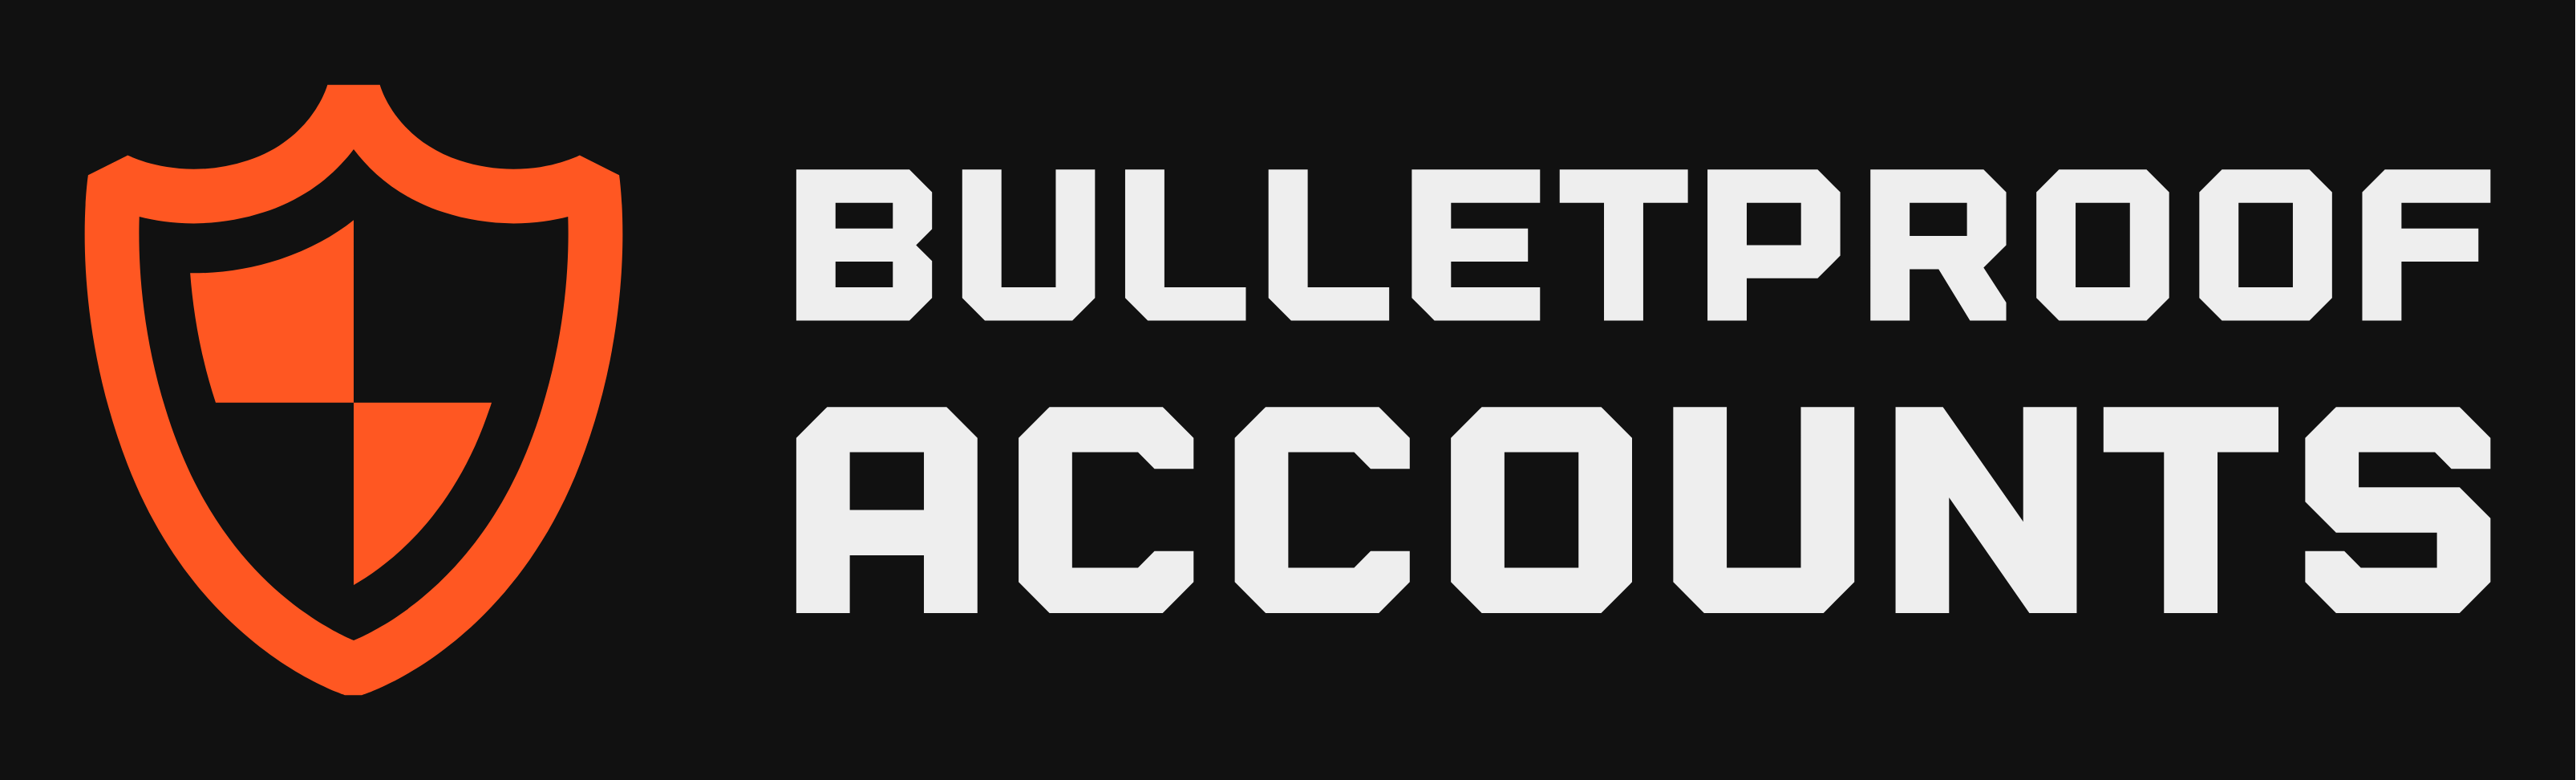 Bulletproof Accounts